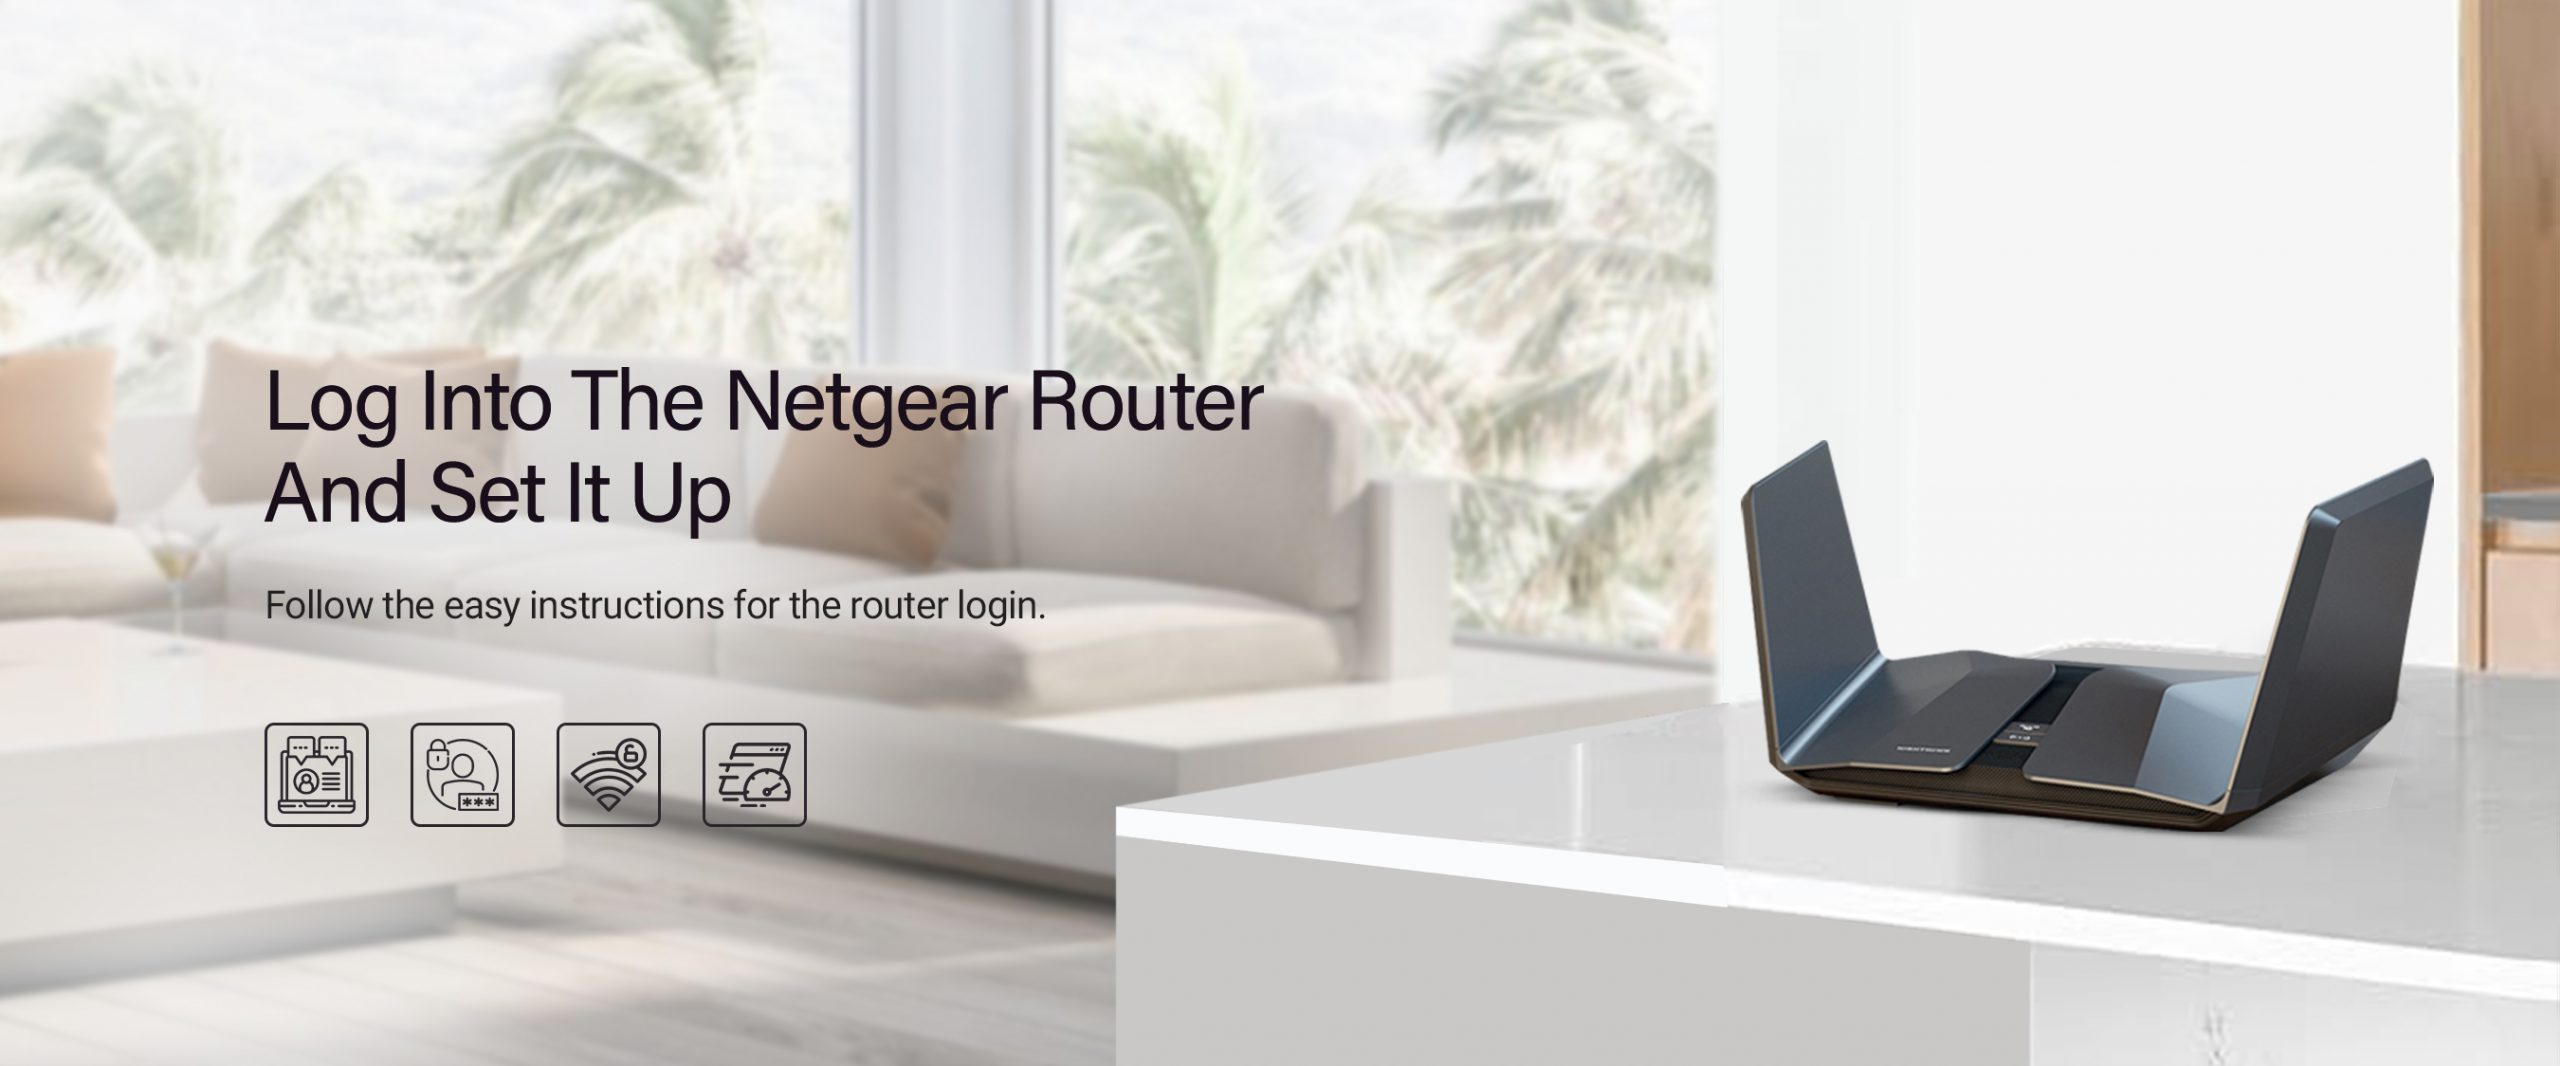 Netgear router login banner